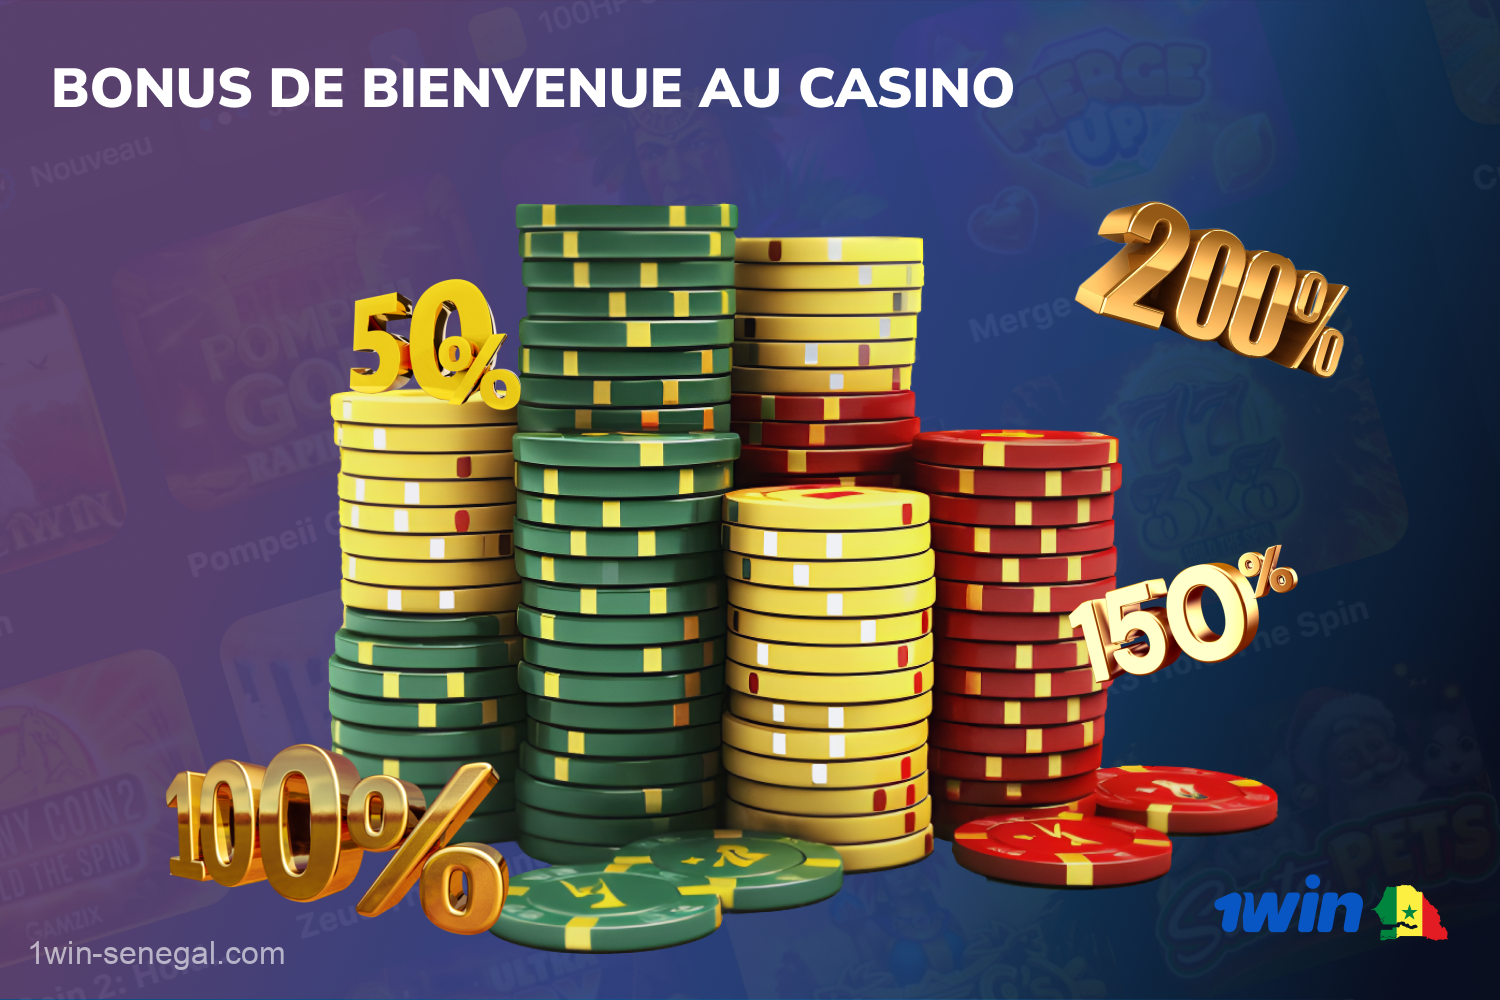 Un bonus de bienvenue de 1win casino attend les joueurs sénégalais après avoir effectué un dépôt sur leur compte